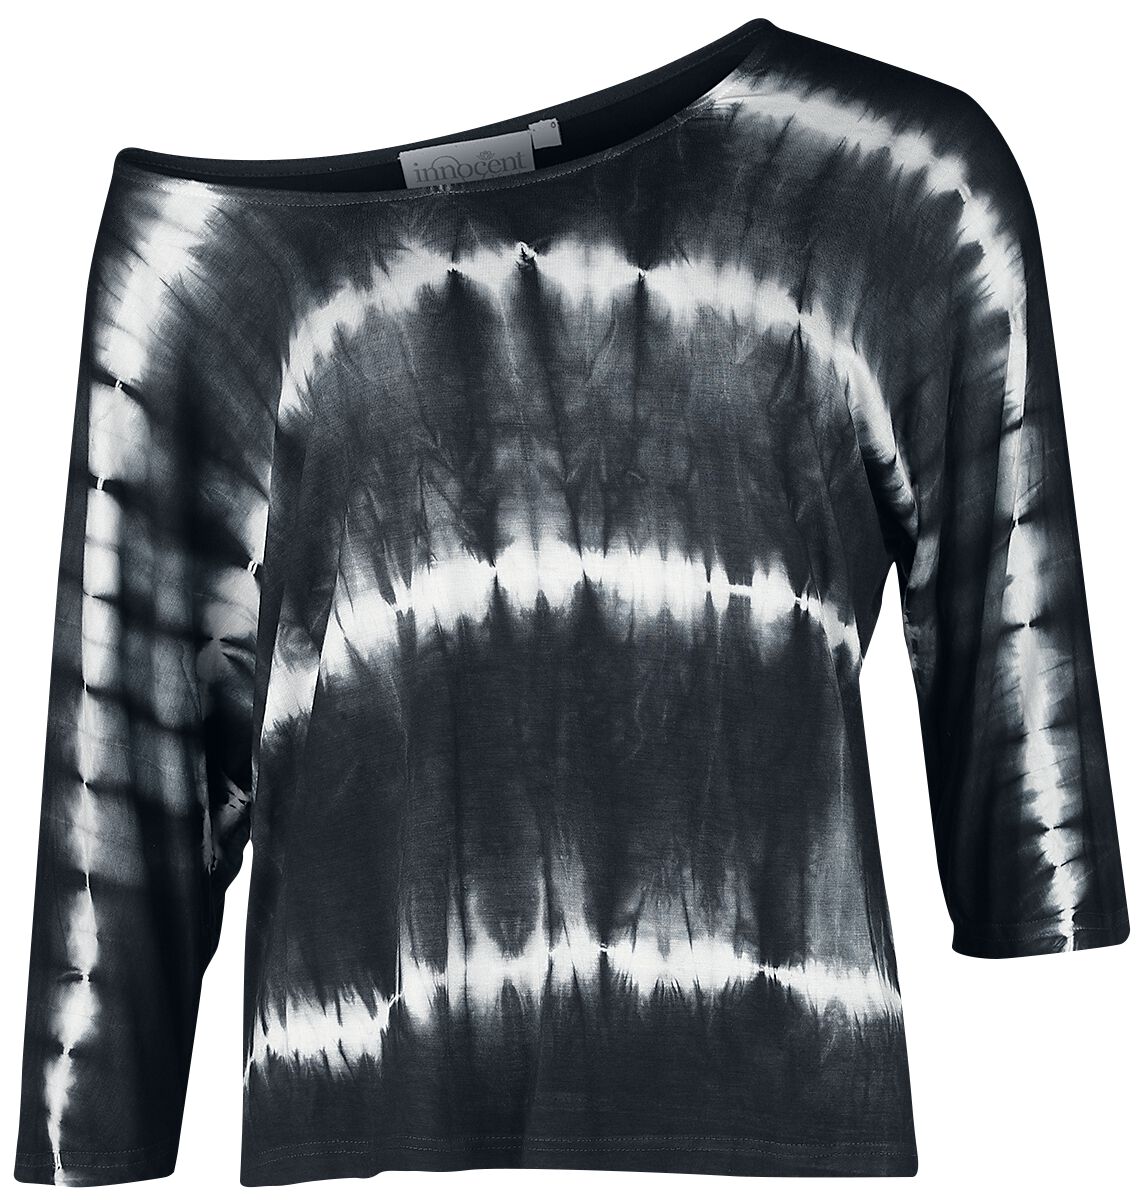 Innocent - Gothic Langarmshirt - Solana Top - XS bis 4XL - für Damen - Größe M - schwarz/weiß von innocent